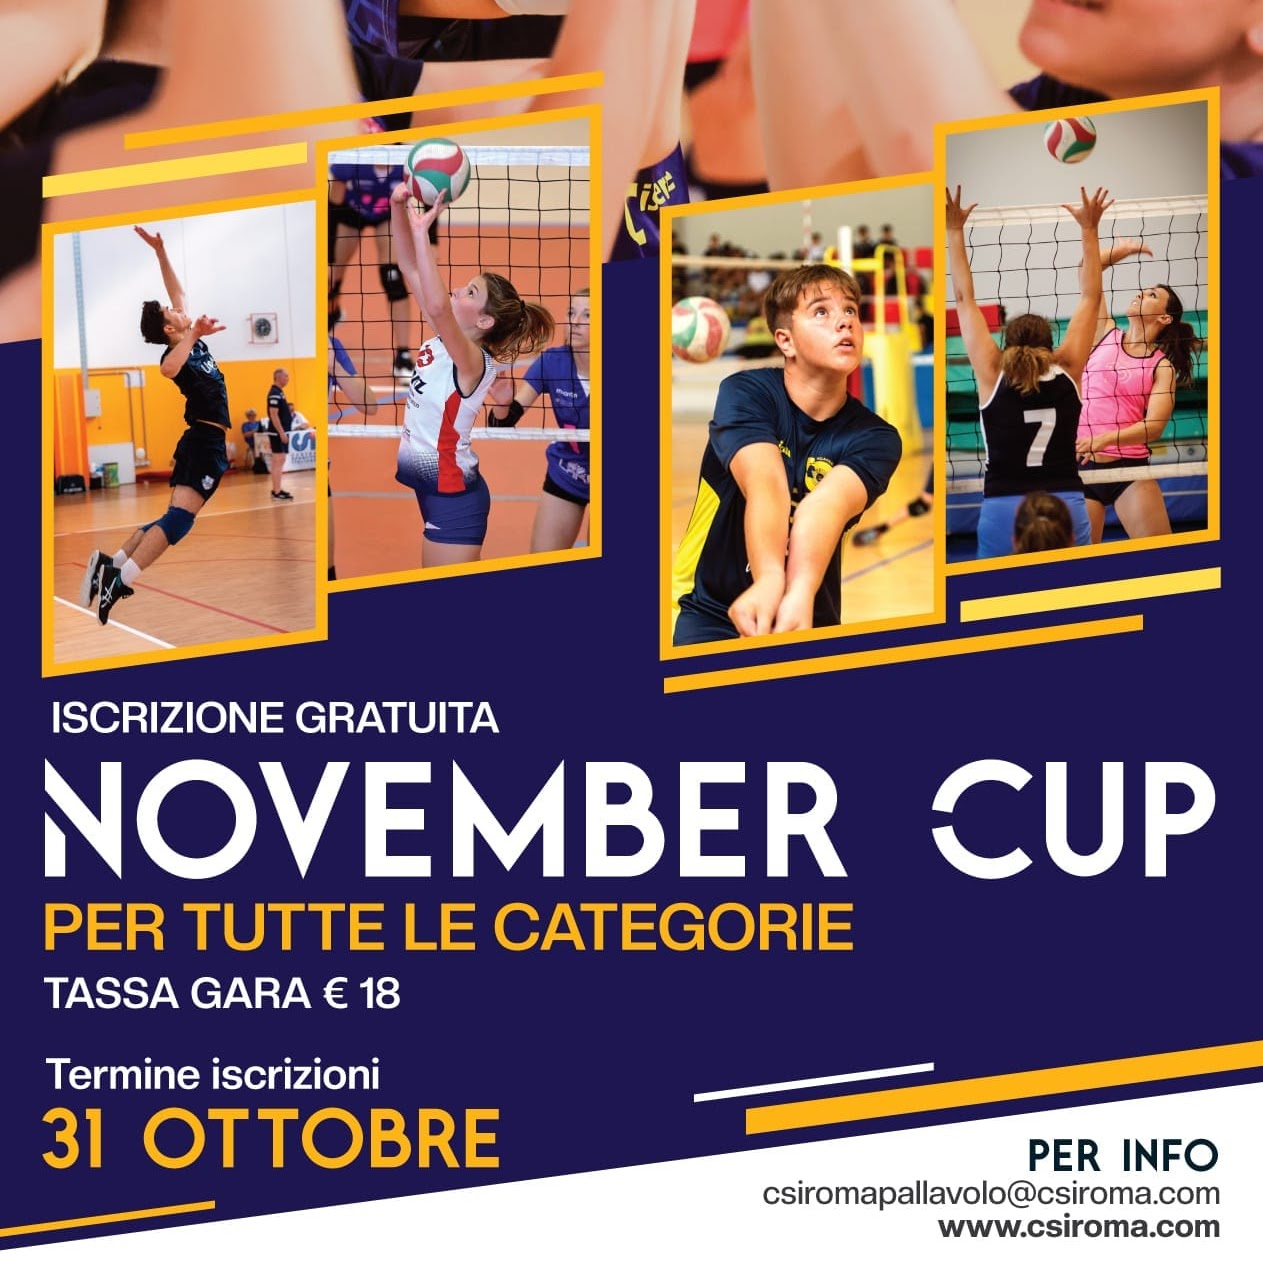 November Cup: al via la prima edizione